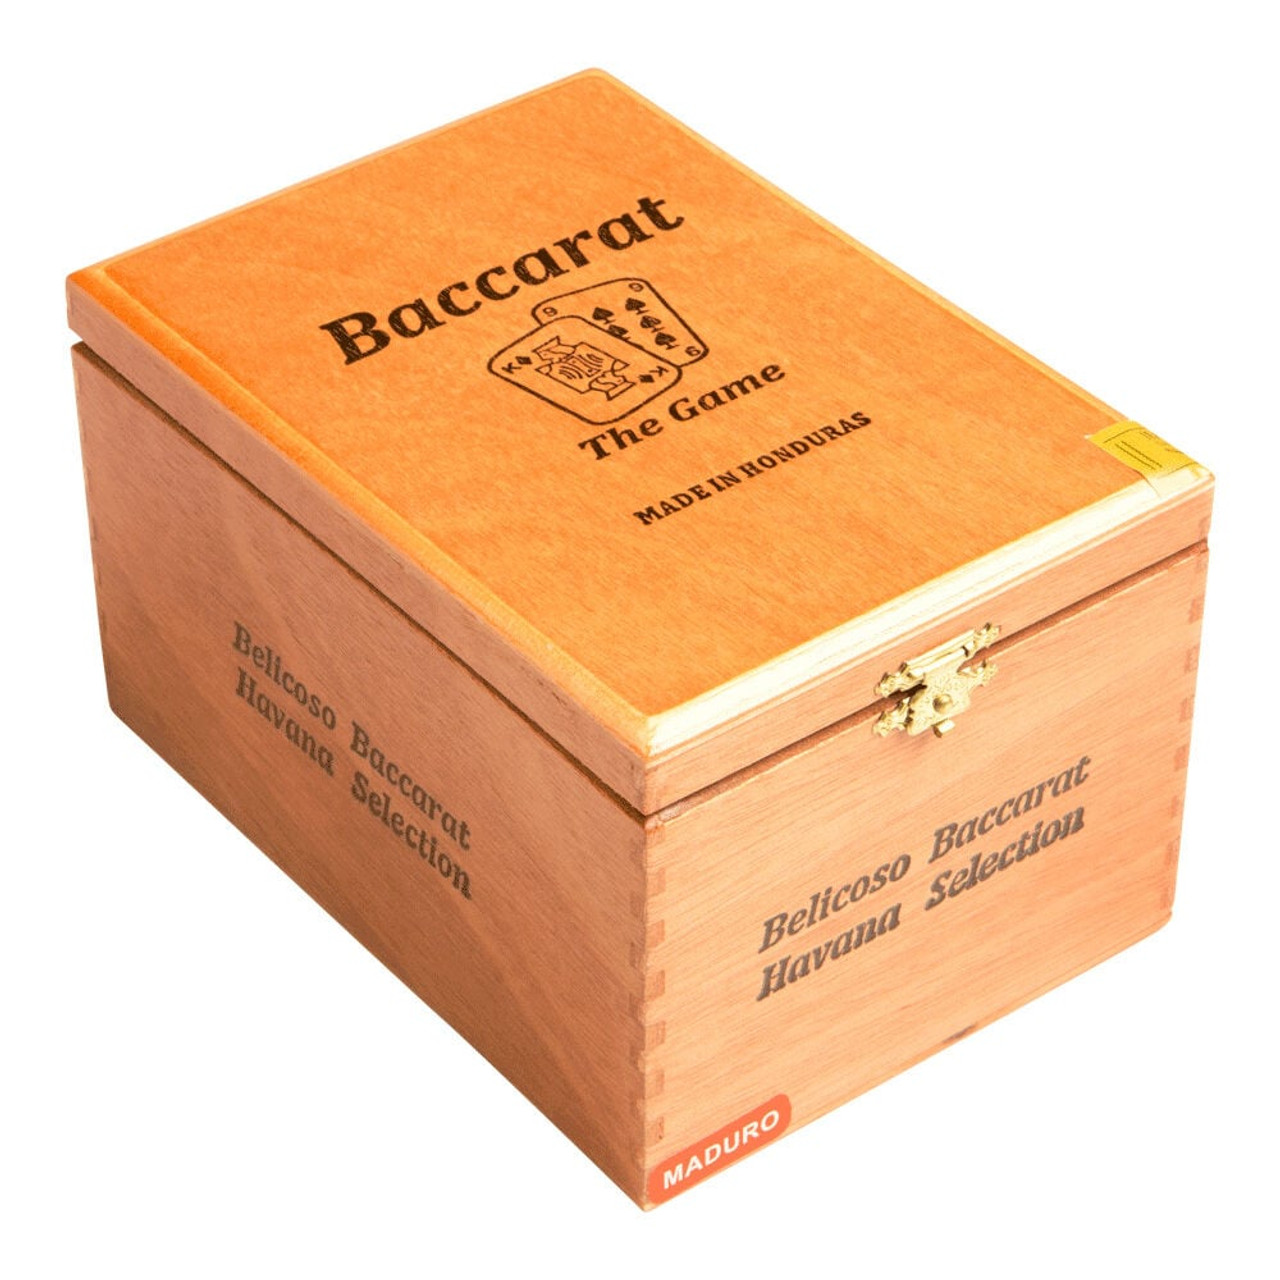 Baccarat Churchill Maduro Cigars - 7 x 50 (Box of 25) *Box